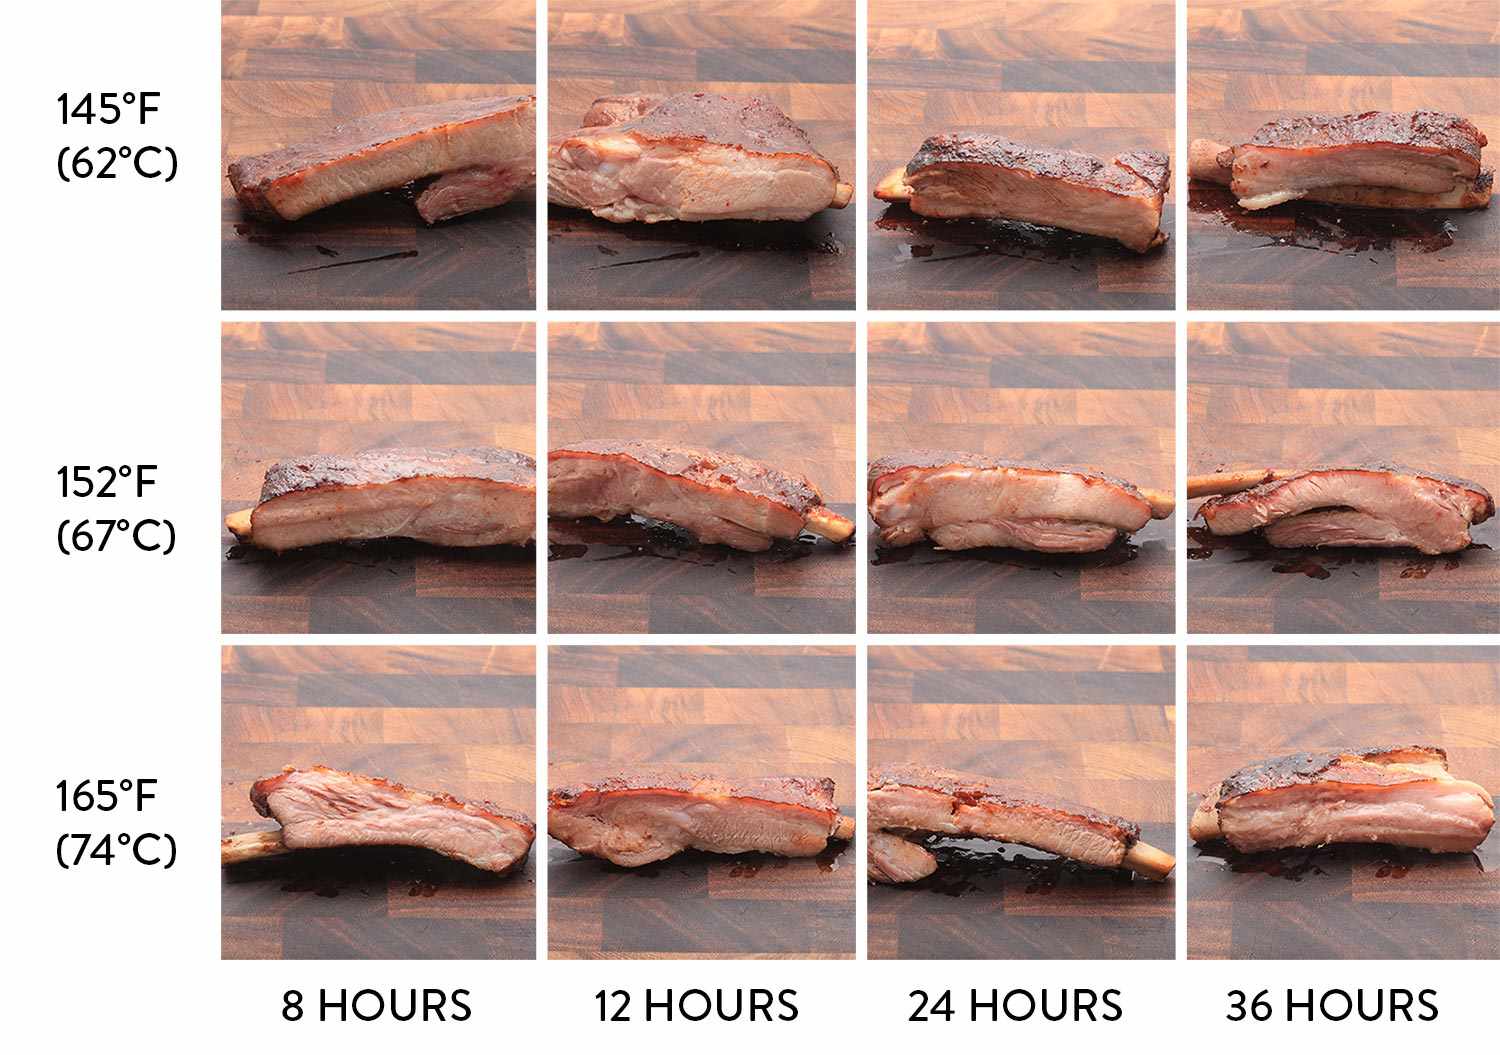 图表显示了在不同温度下用真空真空技术烹饪不同时间的猪排骨